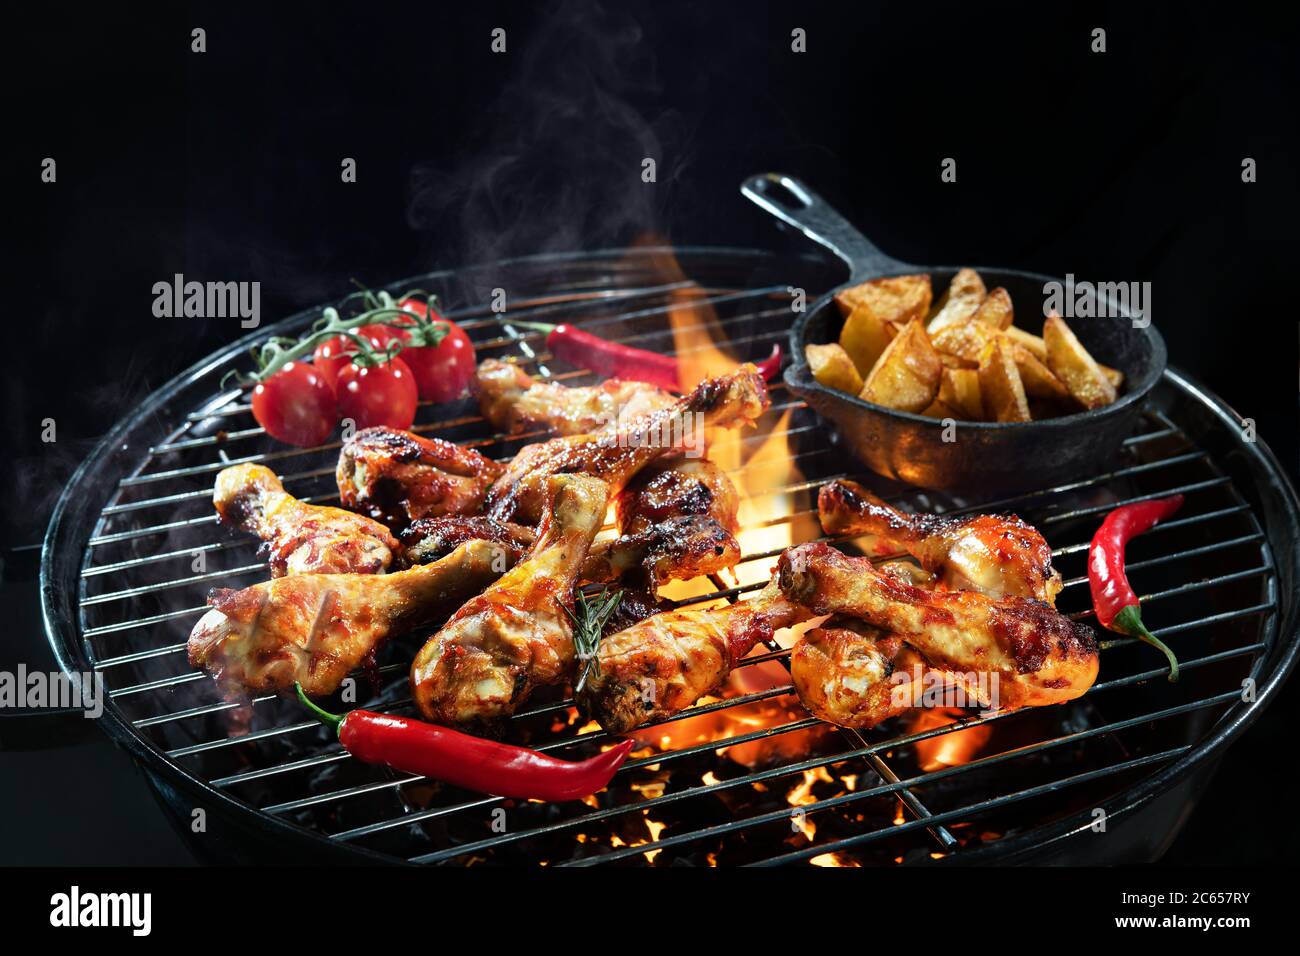 Des cuisses de poulet grillées ou des pilons de poulet sur le barbecue chaud flamboyant avec de la fumée sur fond sombre Banque D'Images